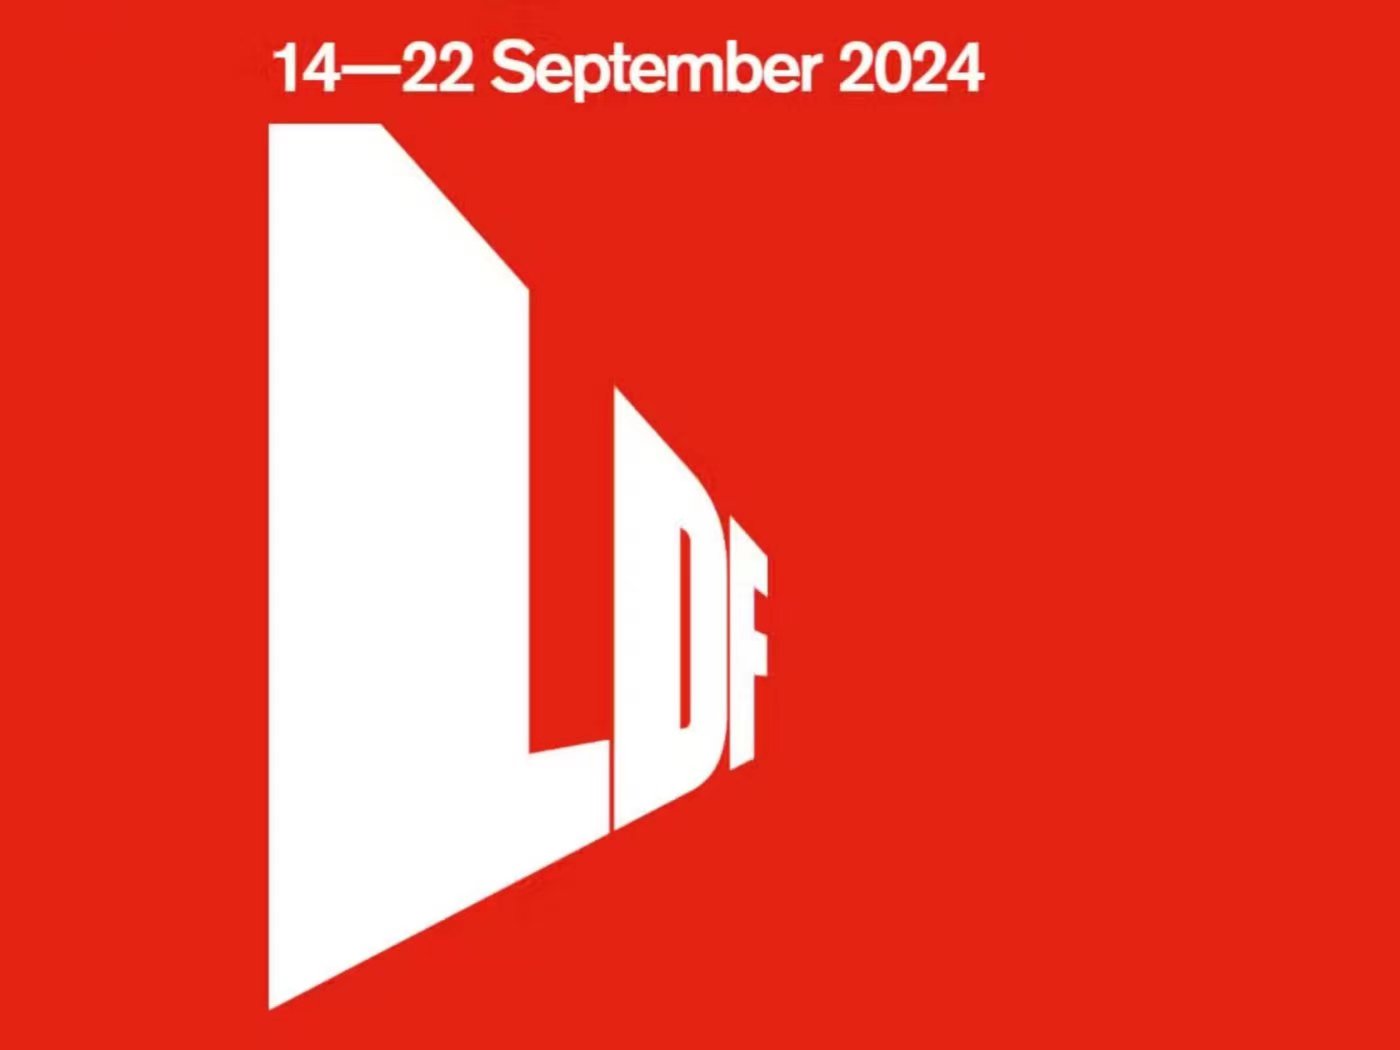 London Design Festival take place in September